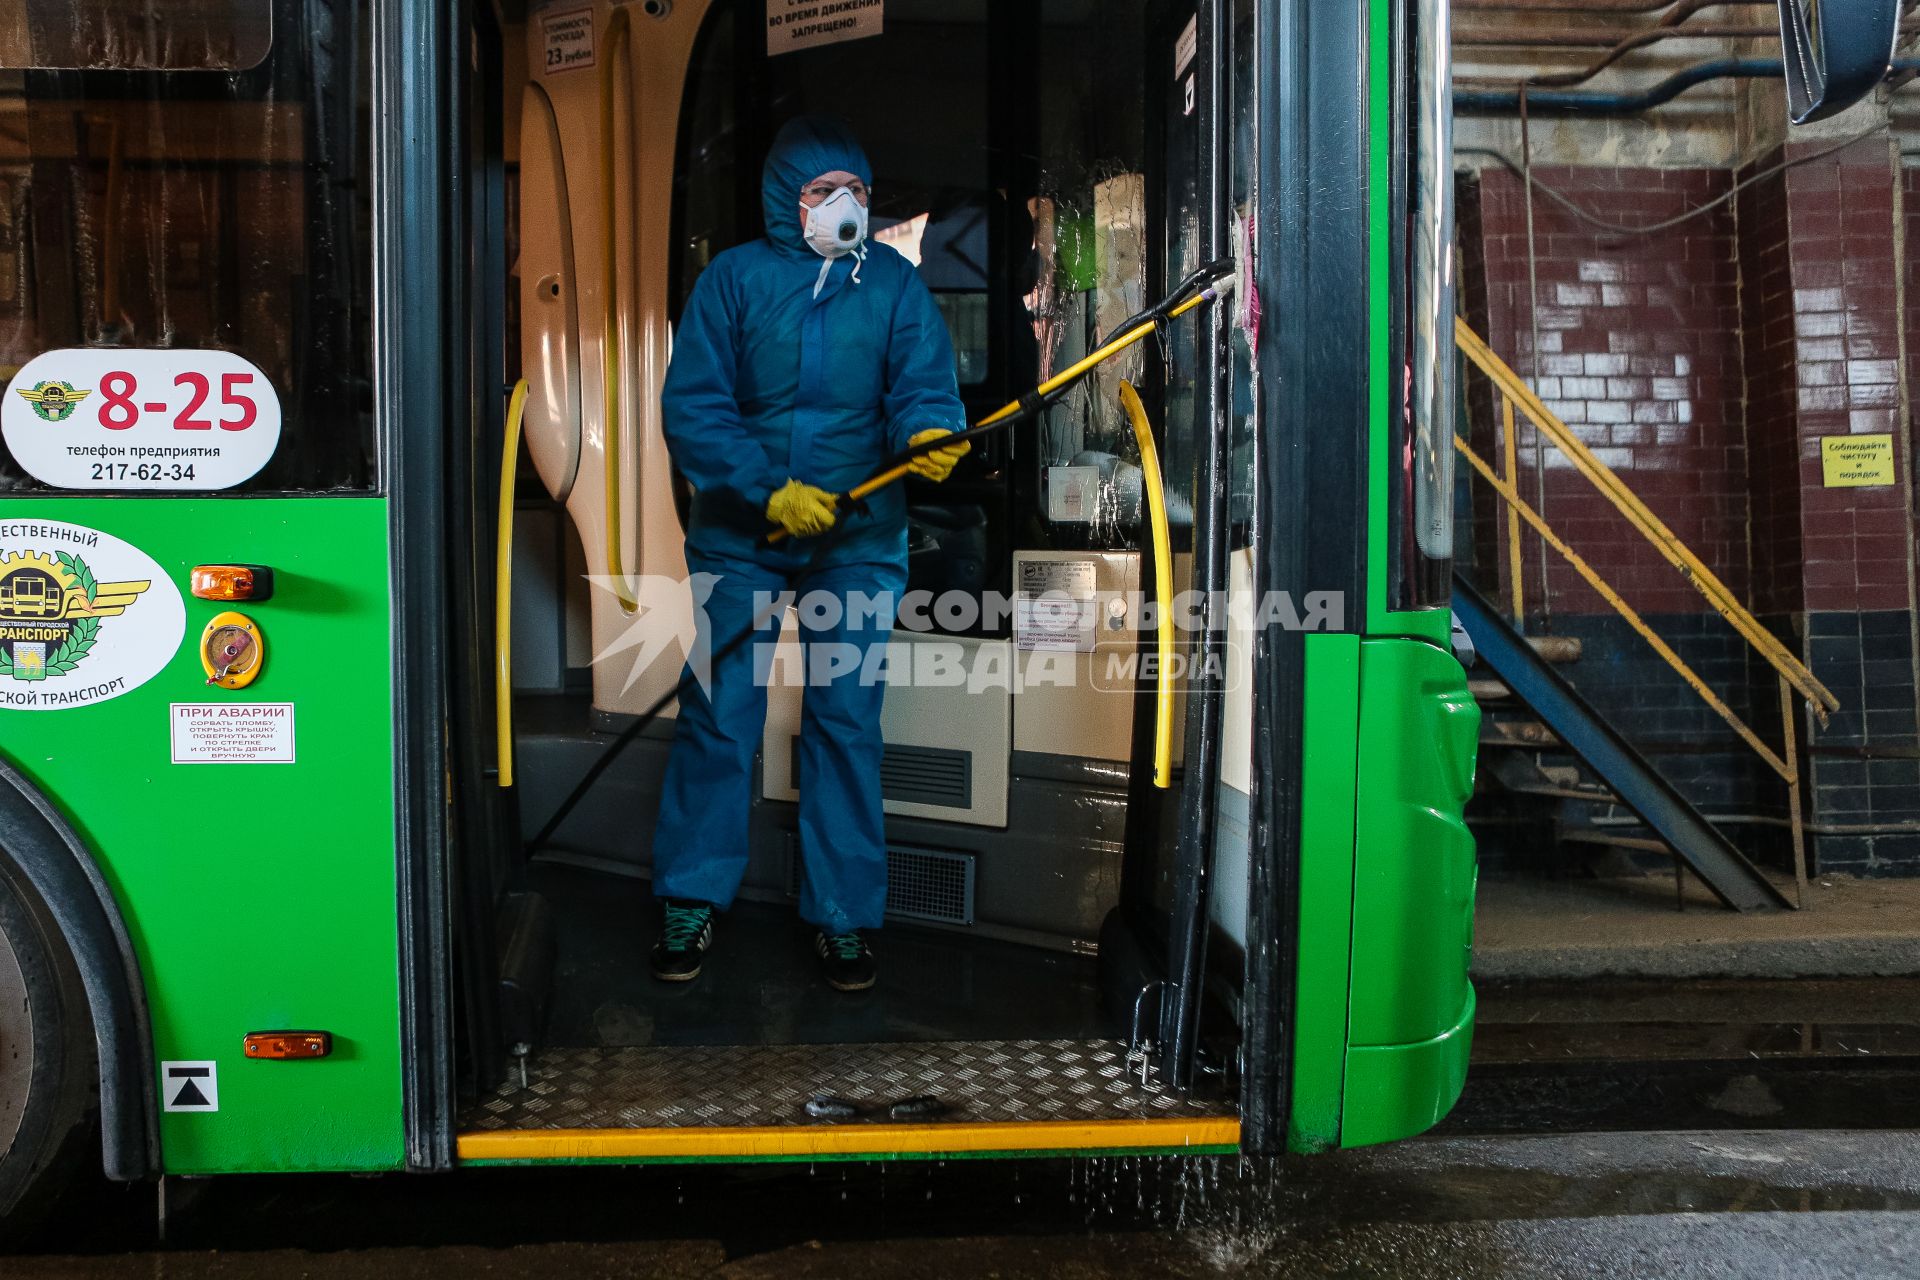 Челябинск. Сотрудница санитарной службы производит дезинфекцию салона трамвая.